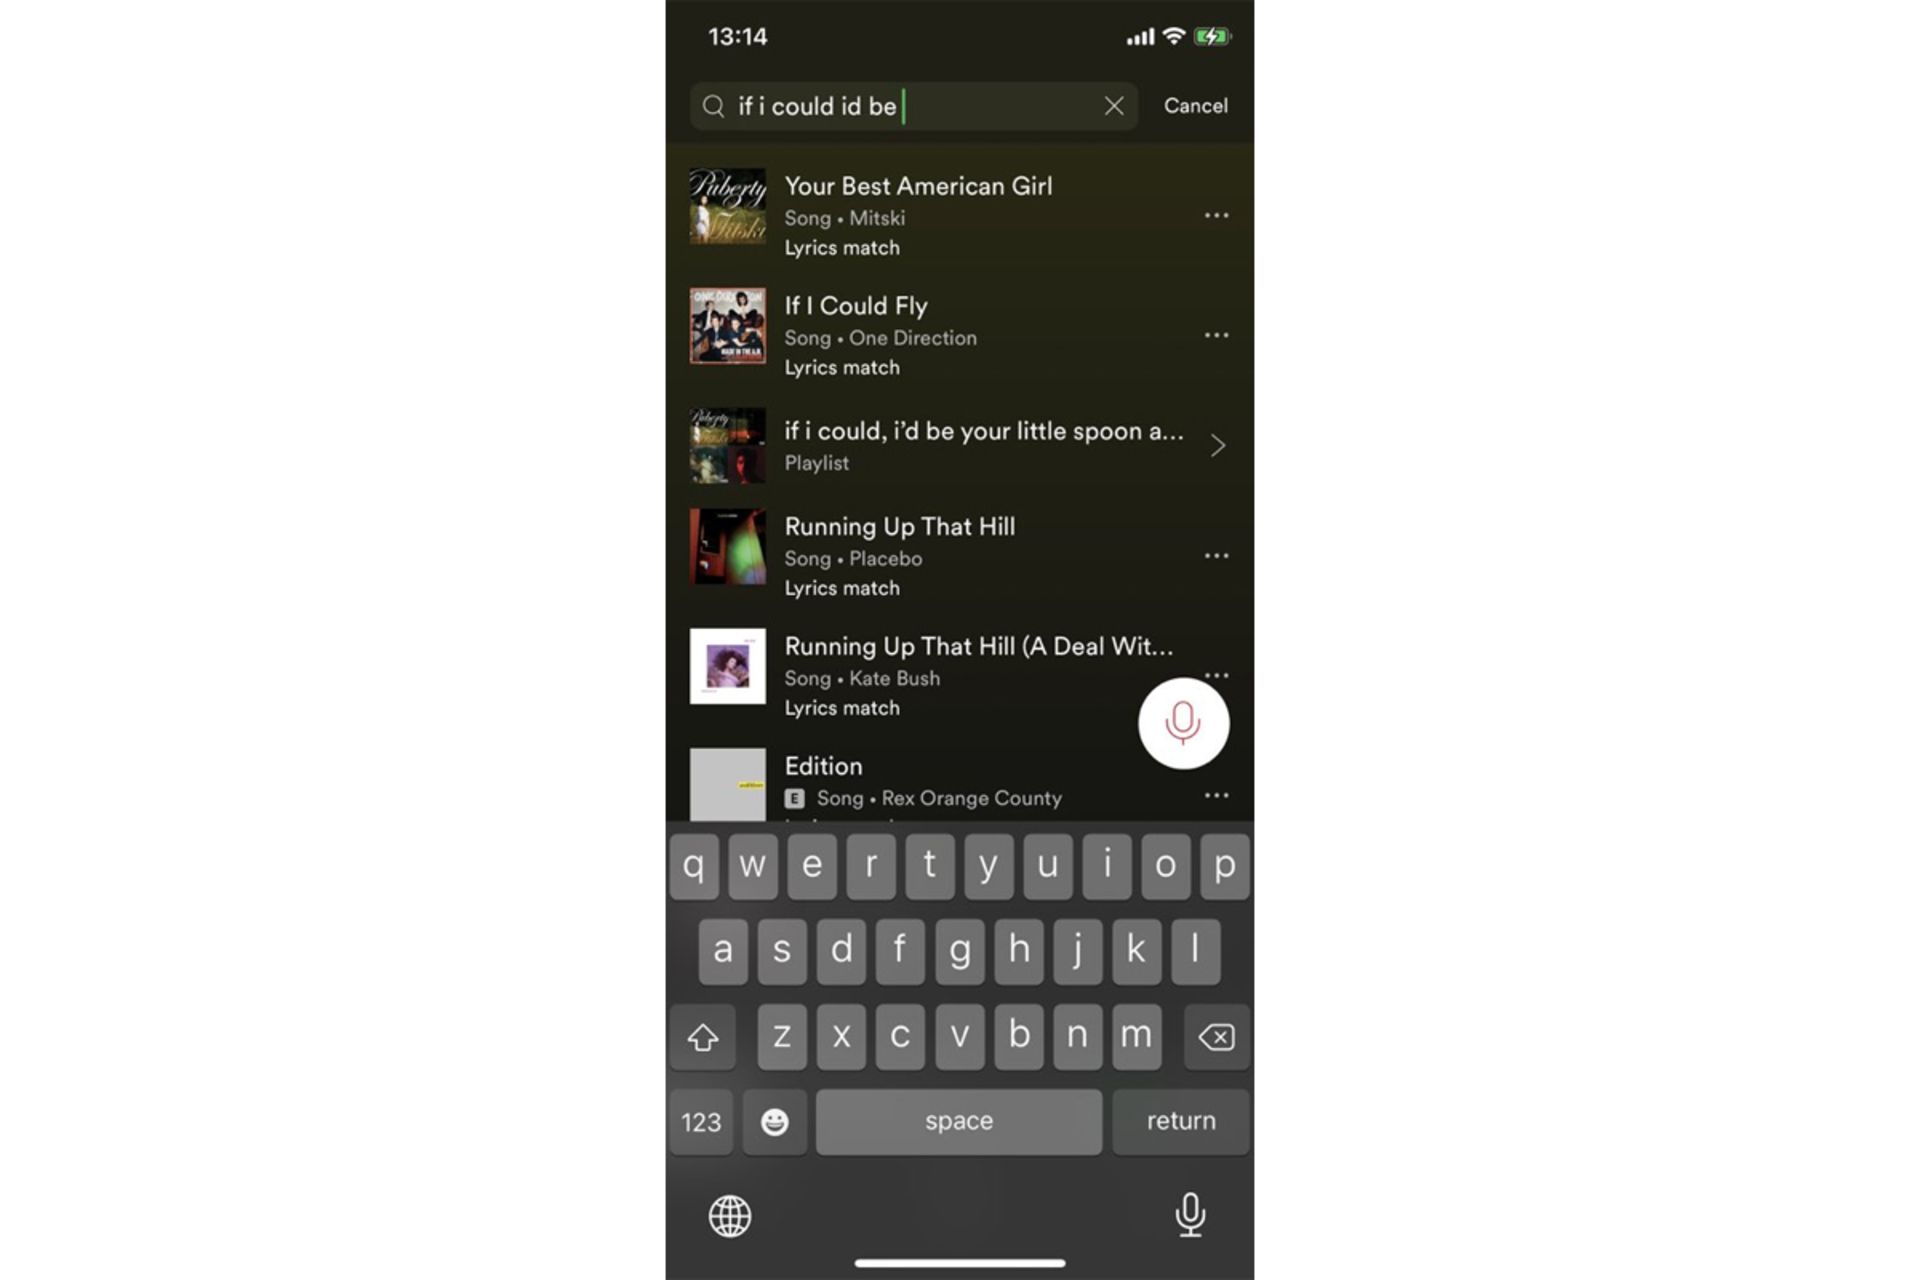 جستجو آهنگ براساس متن در نسخه iOS اسپاتیفای / Spotify